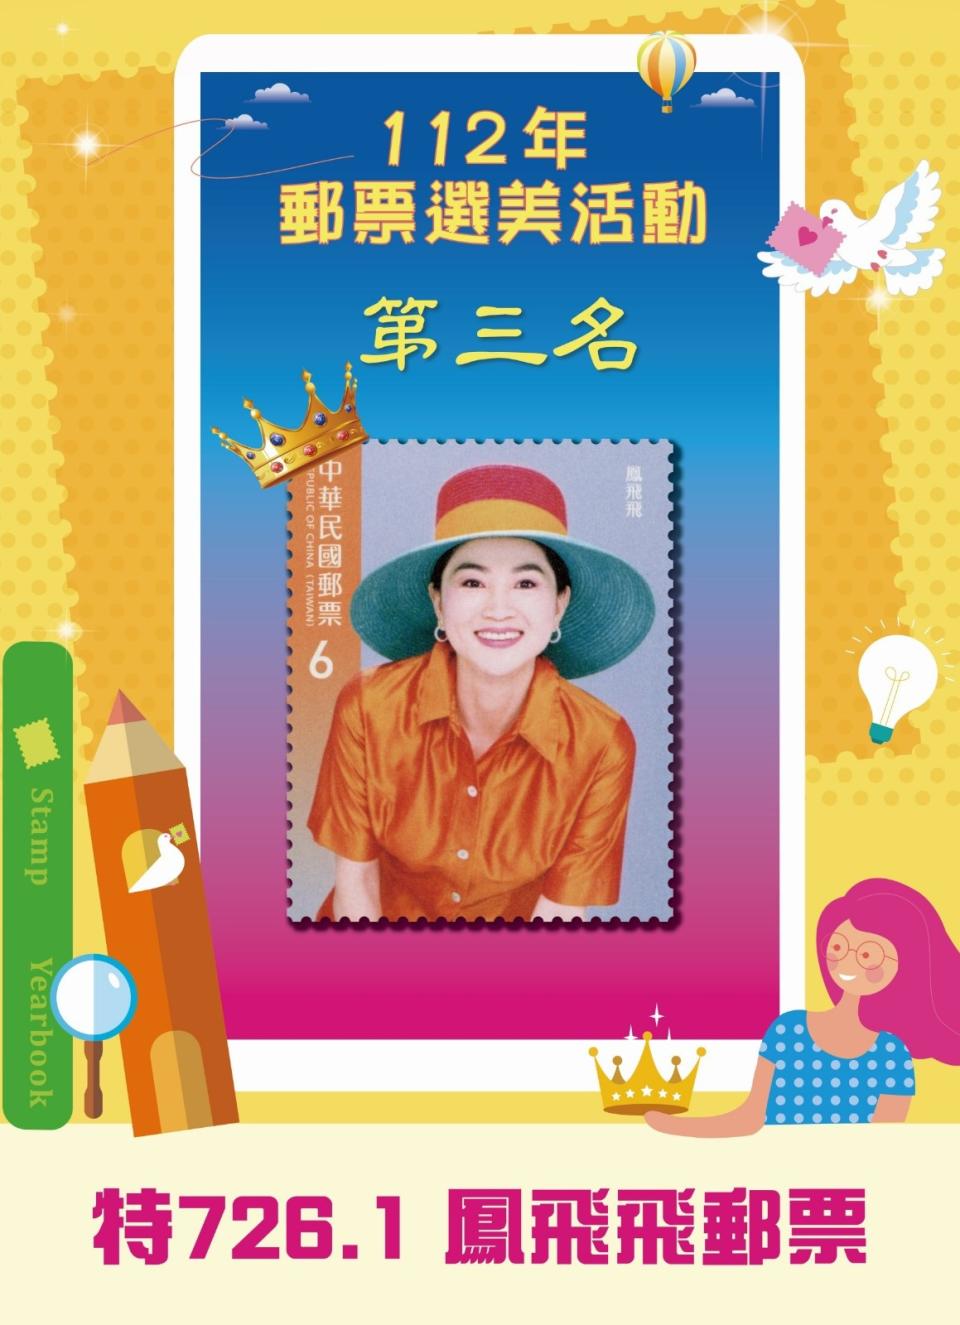 中華郵政公司公布「112年郵票選美活動」票選結果。中華郵政提供